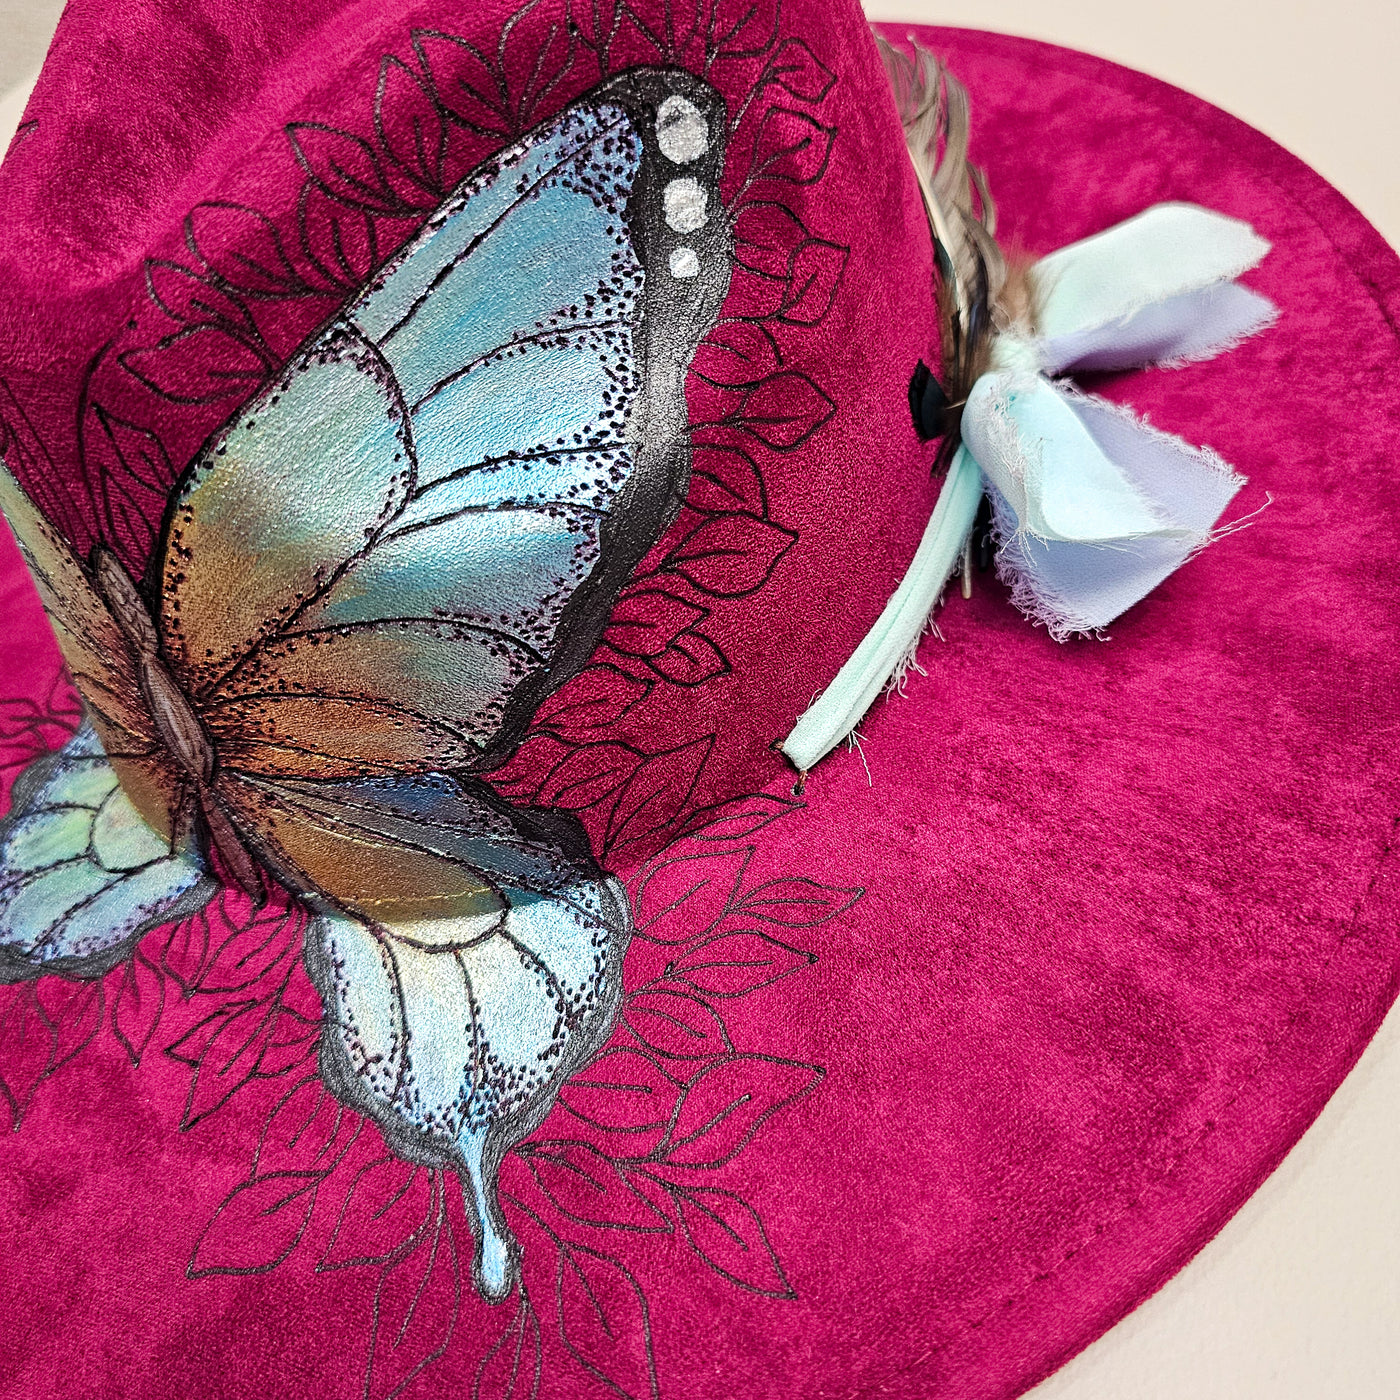 Butterfly Beauty|| Fuschia Suede Burned Wide Brim Hat